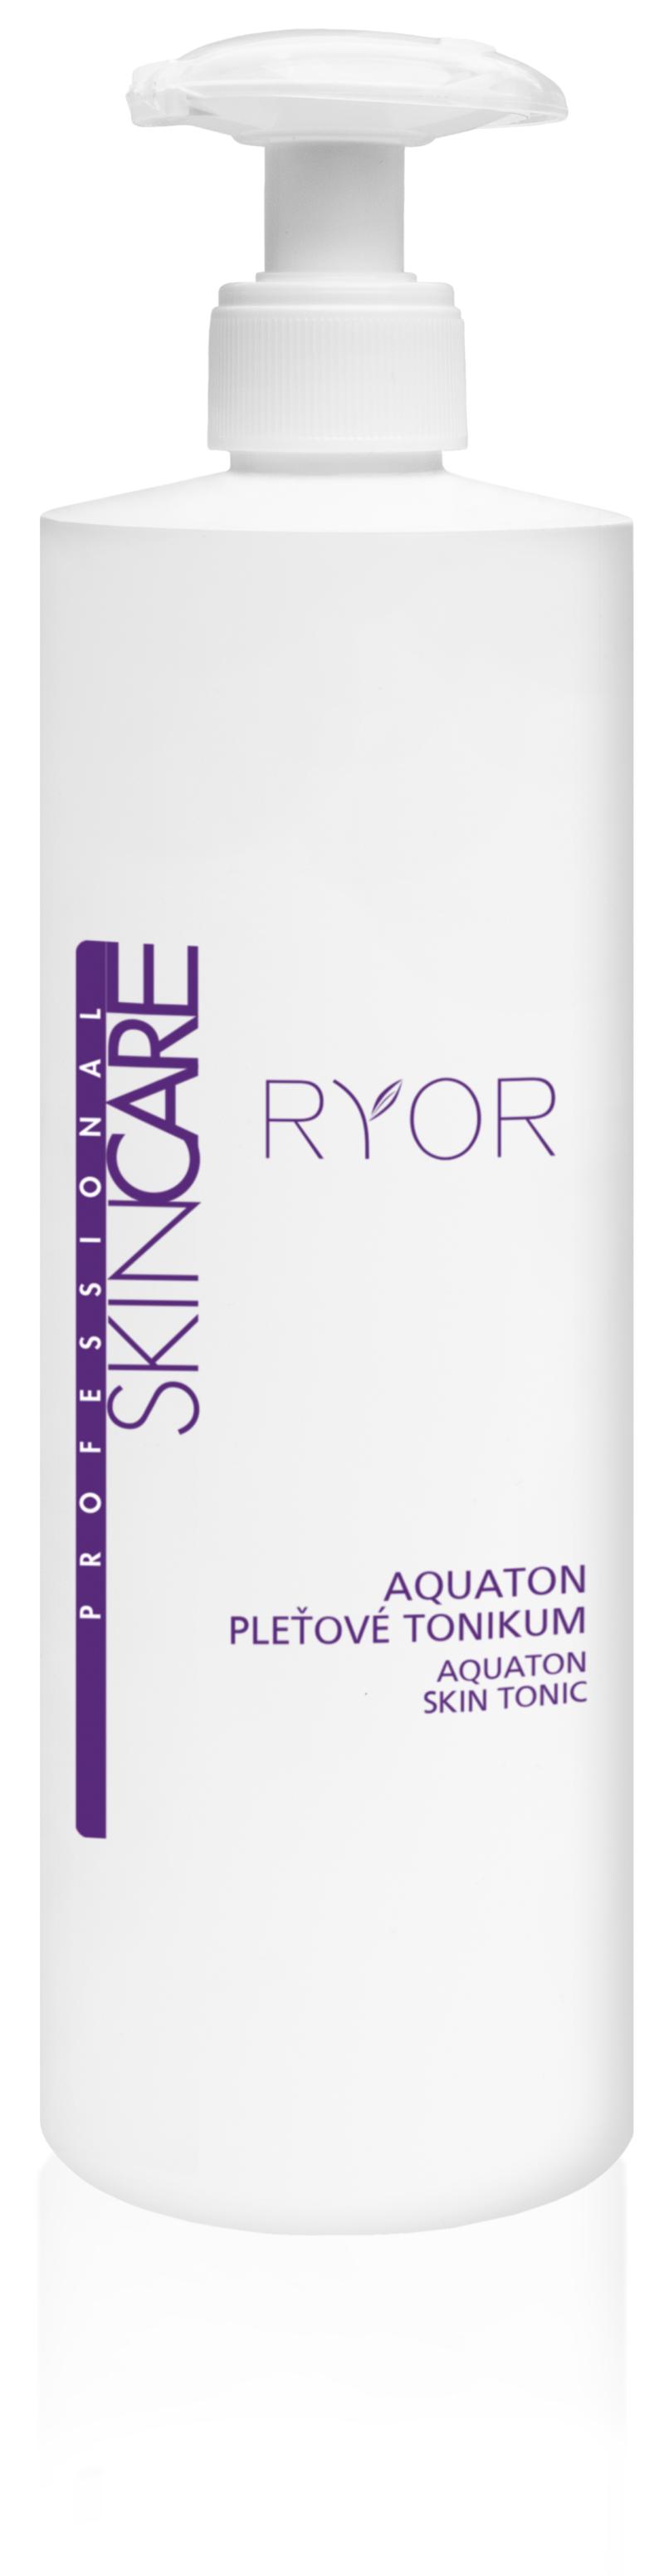 Ryor - Aquaton - pleťové tonikum (Profesionální produkty určené pro maloobchodní prodej)